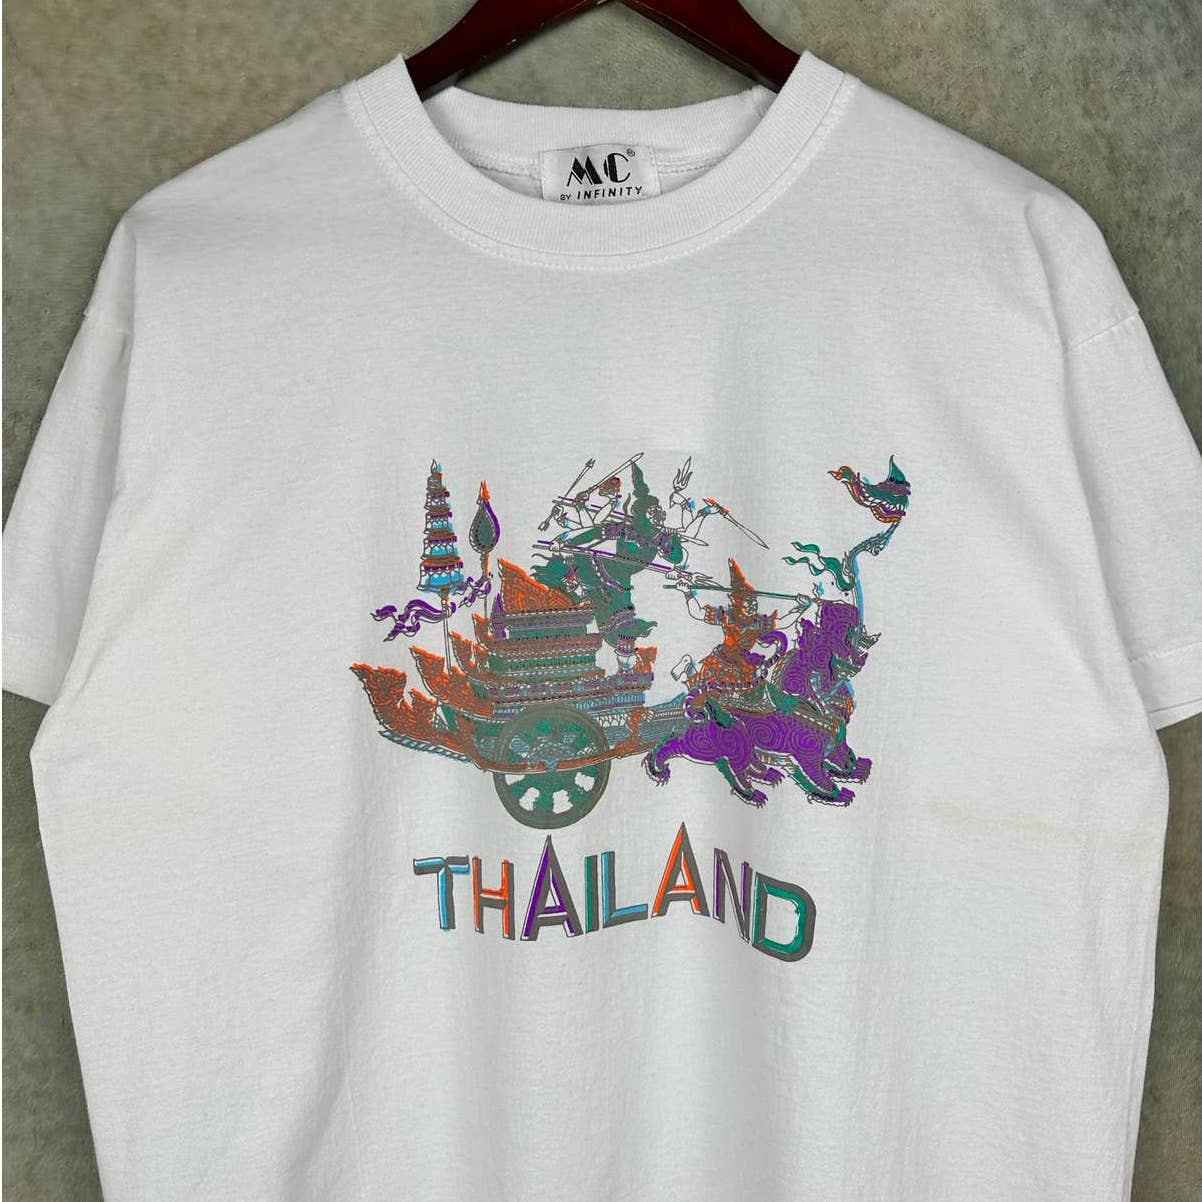 Vintage 80s Thailand Travel T Shirt L